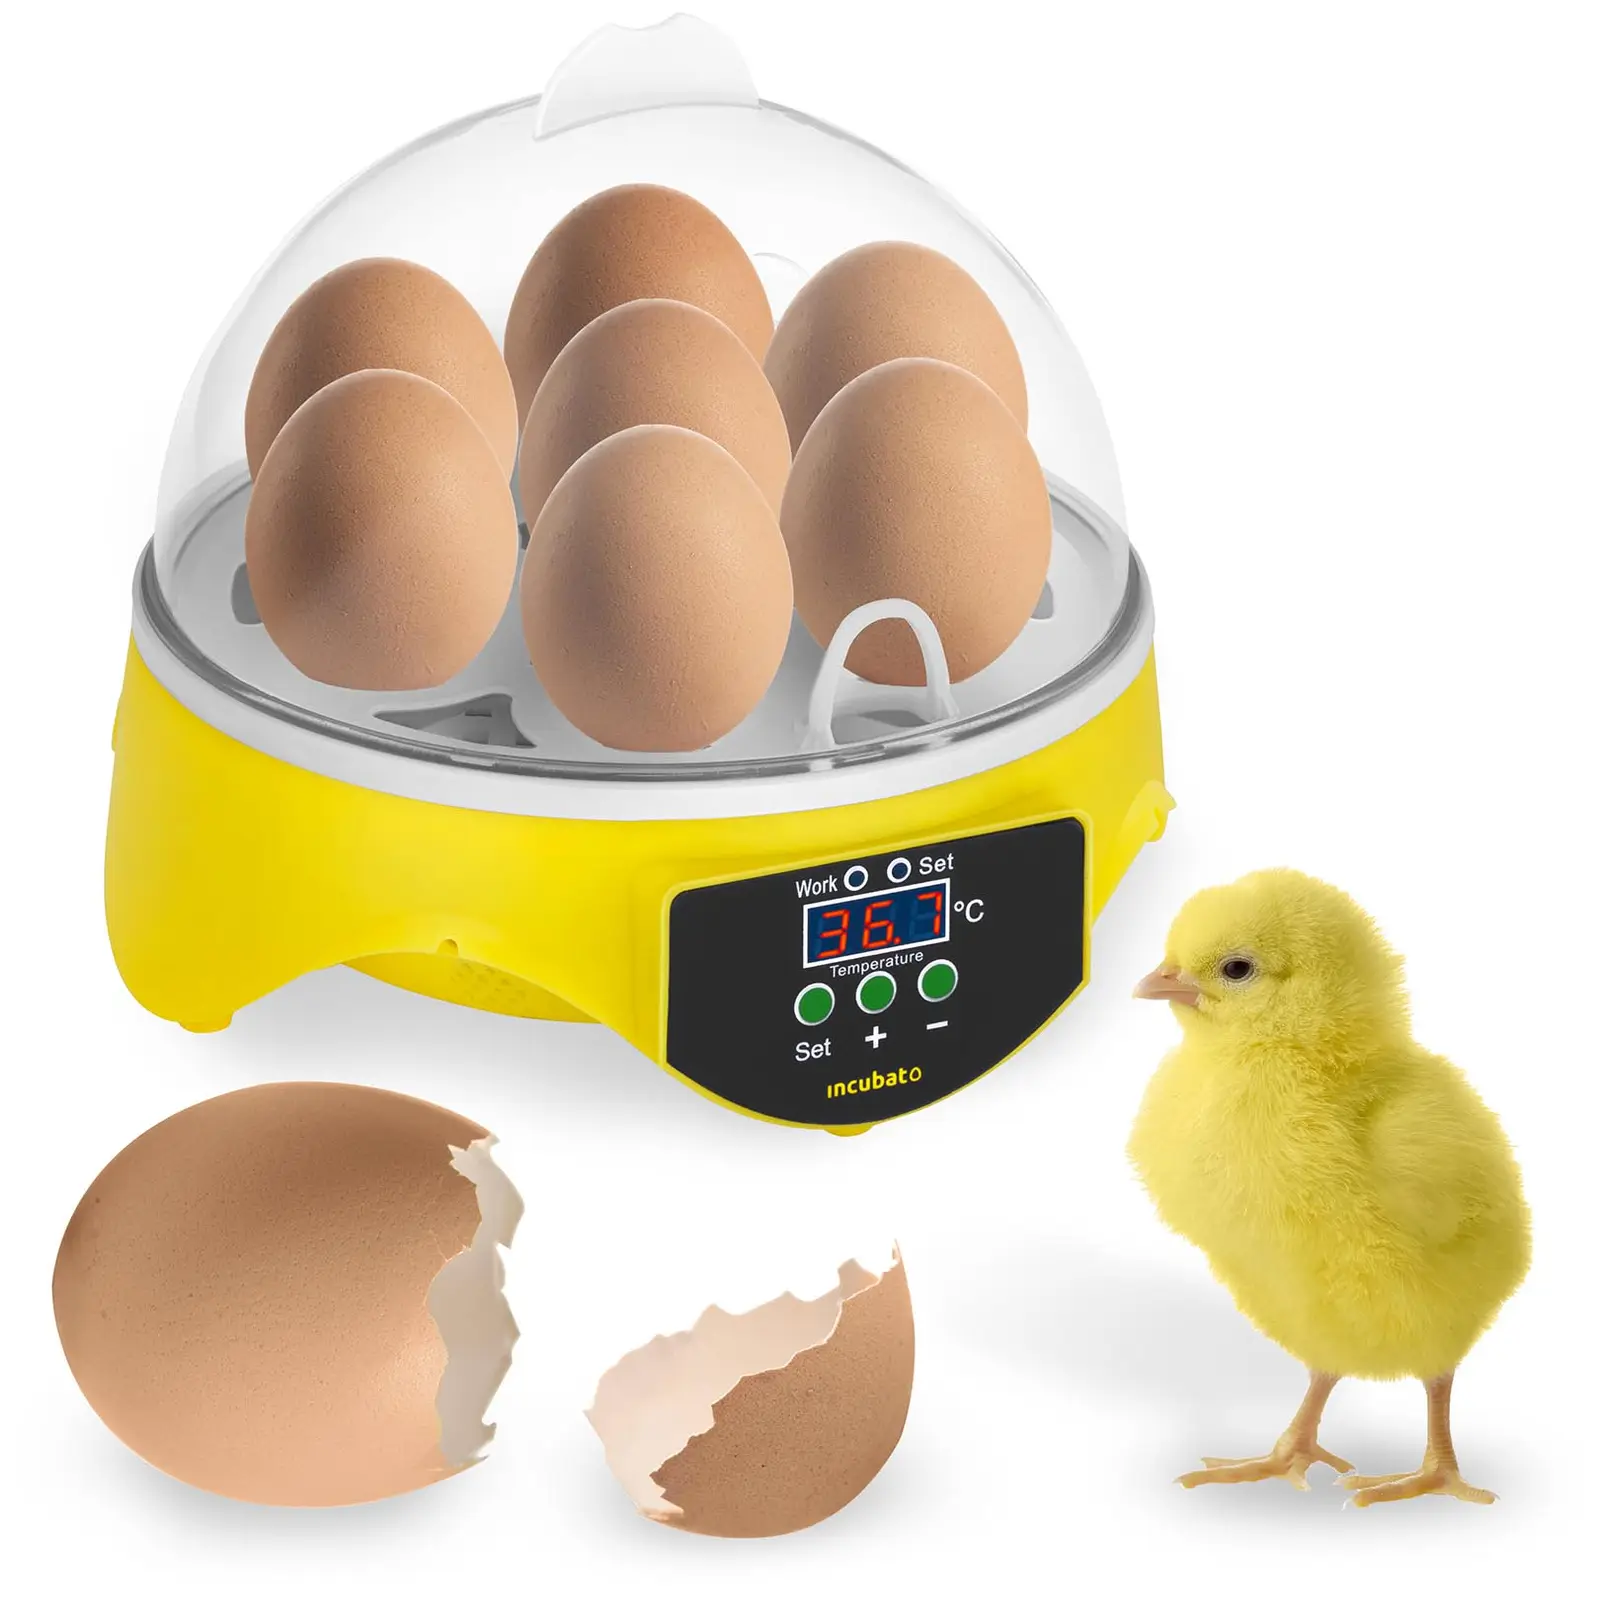 Incubatrice per uova - 7 uova - Lampada sperauova inclusa - 1